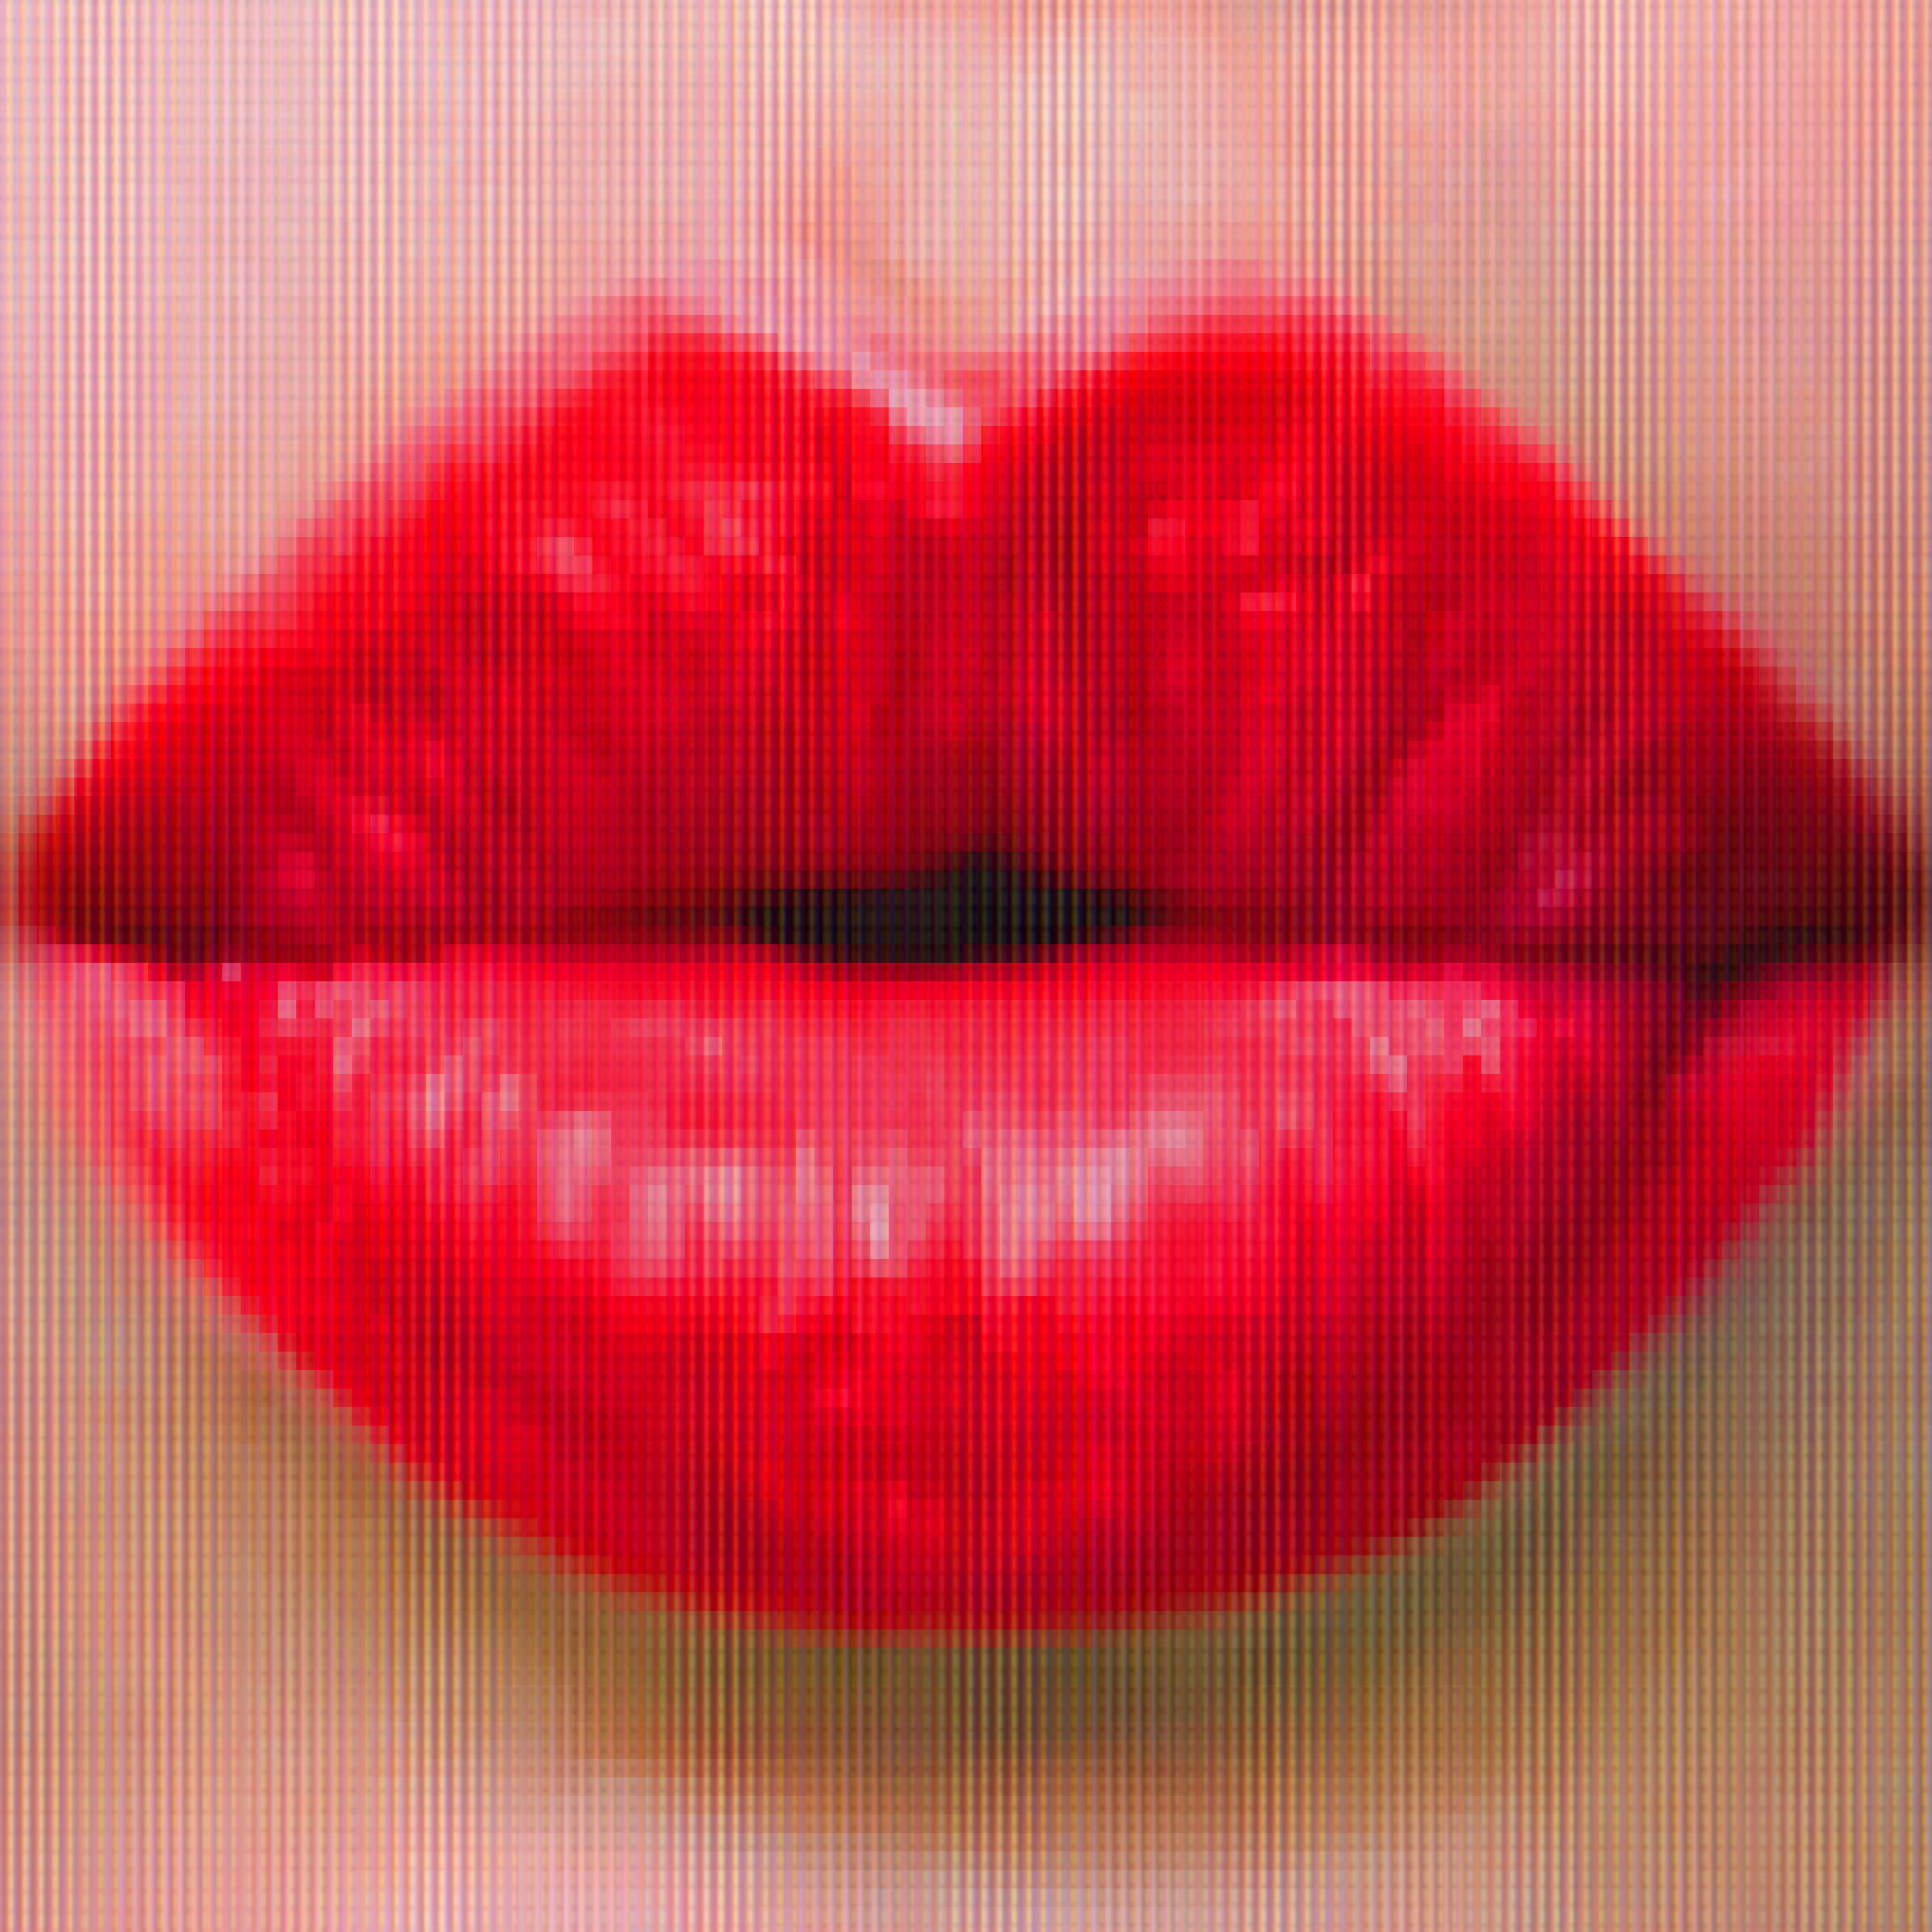 Guby. Красивые губы. Красивые женские губы. Губки женские. Поцелуй в губы.